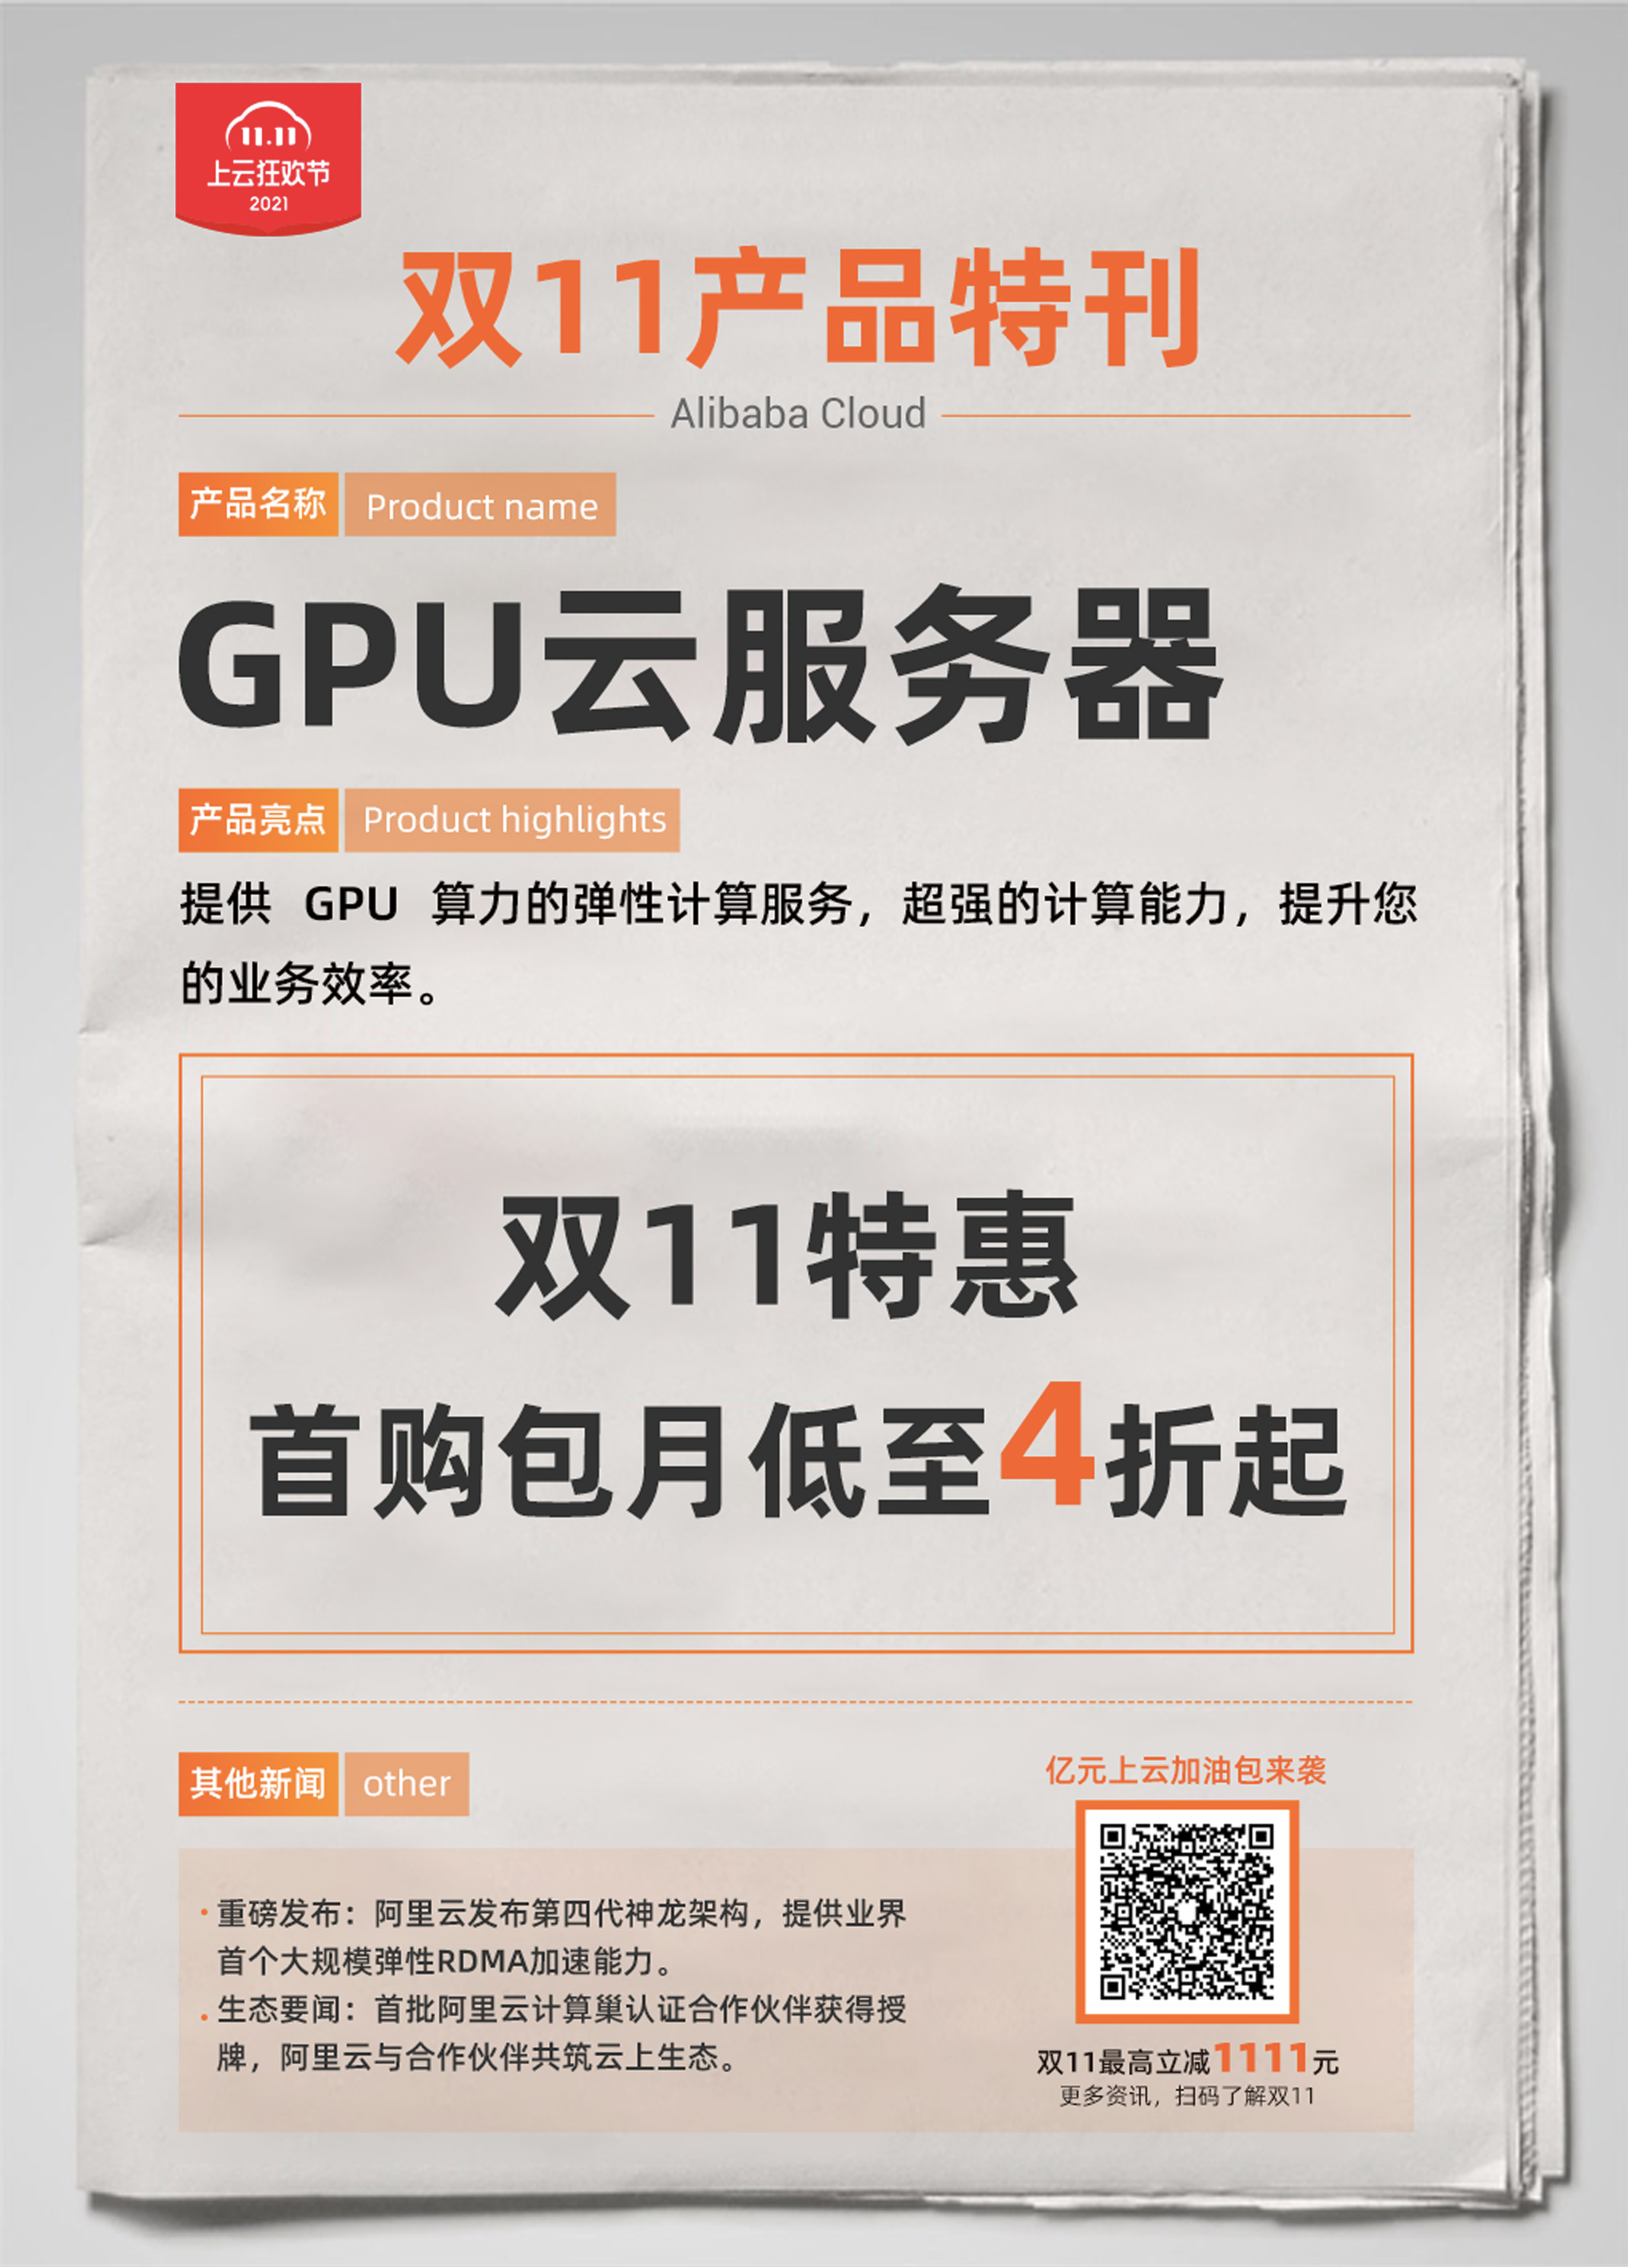 GPU云服务.jpg